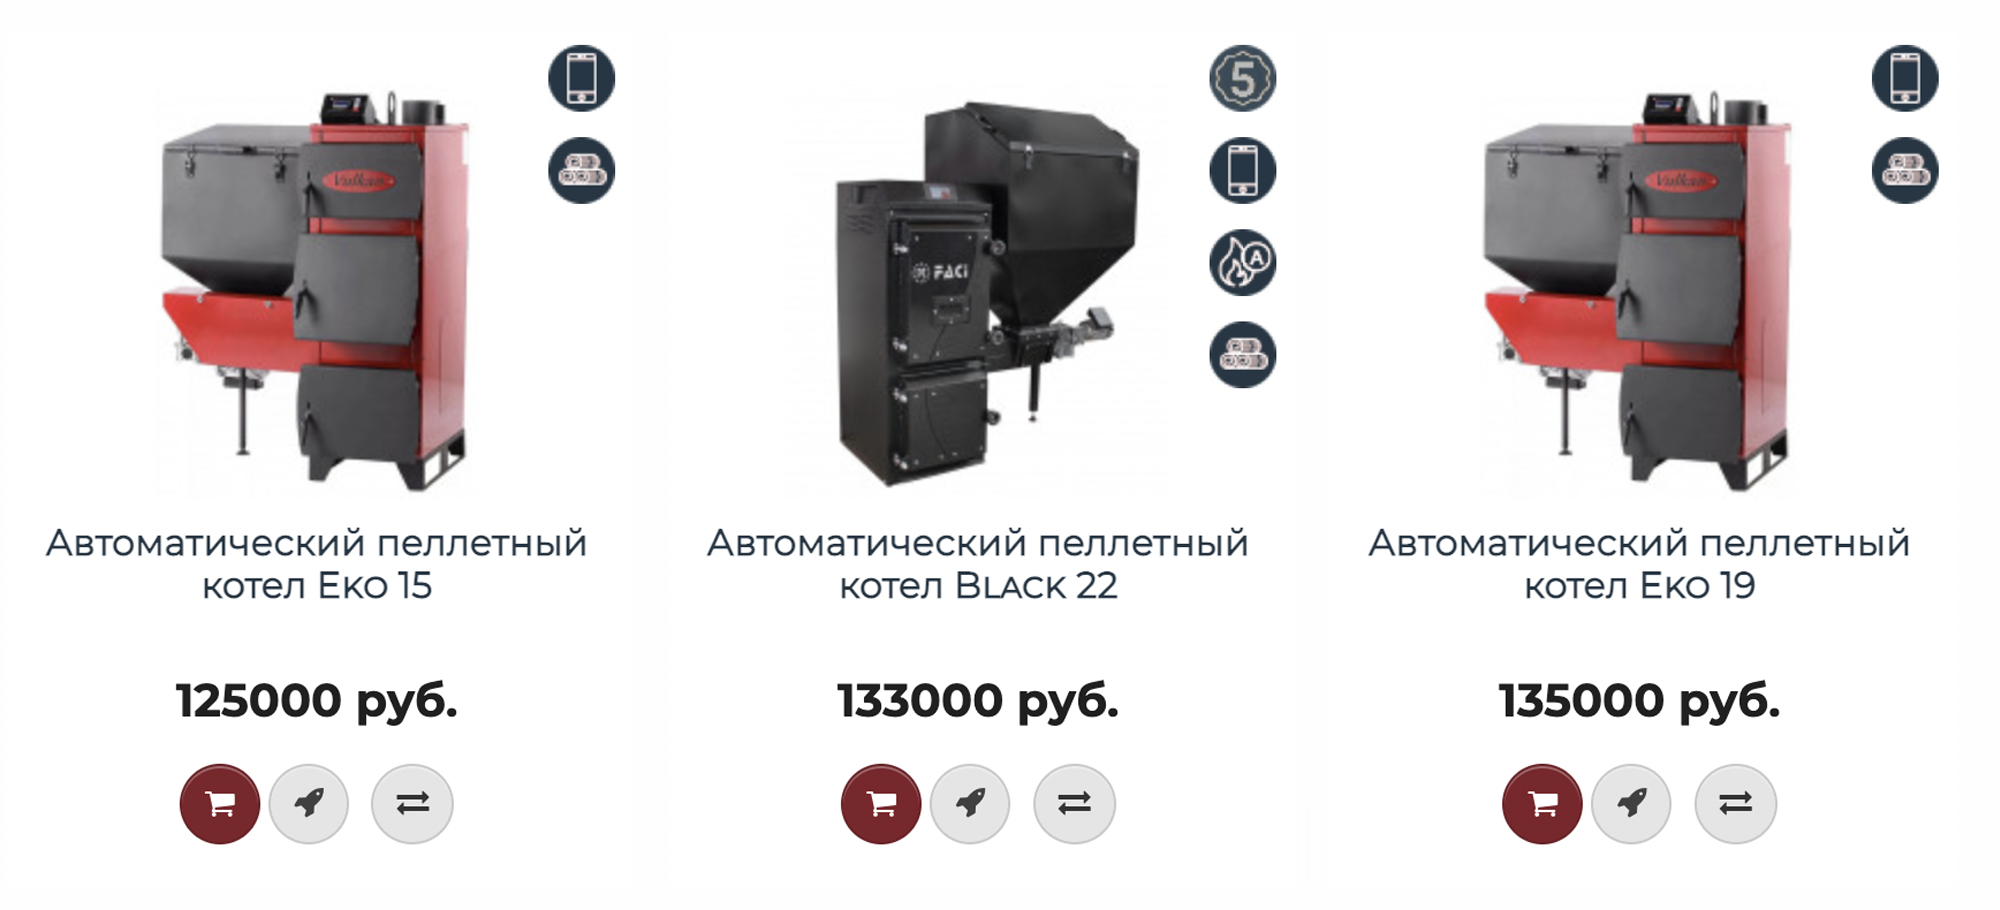 Автоматические пеллетные котлы стоят от 100 тысяч. Источник: mag-tepla.ru